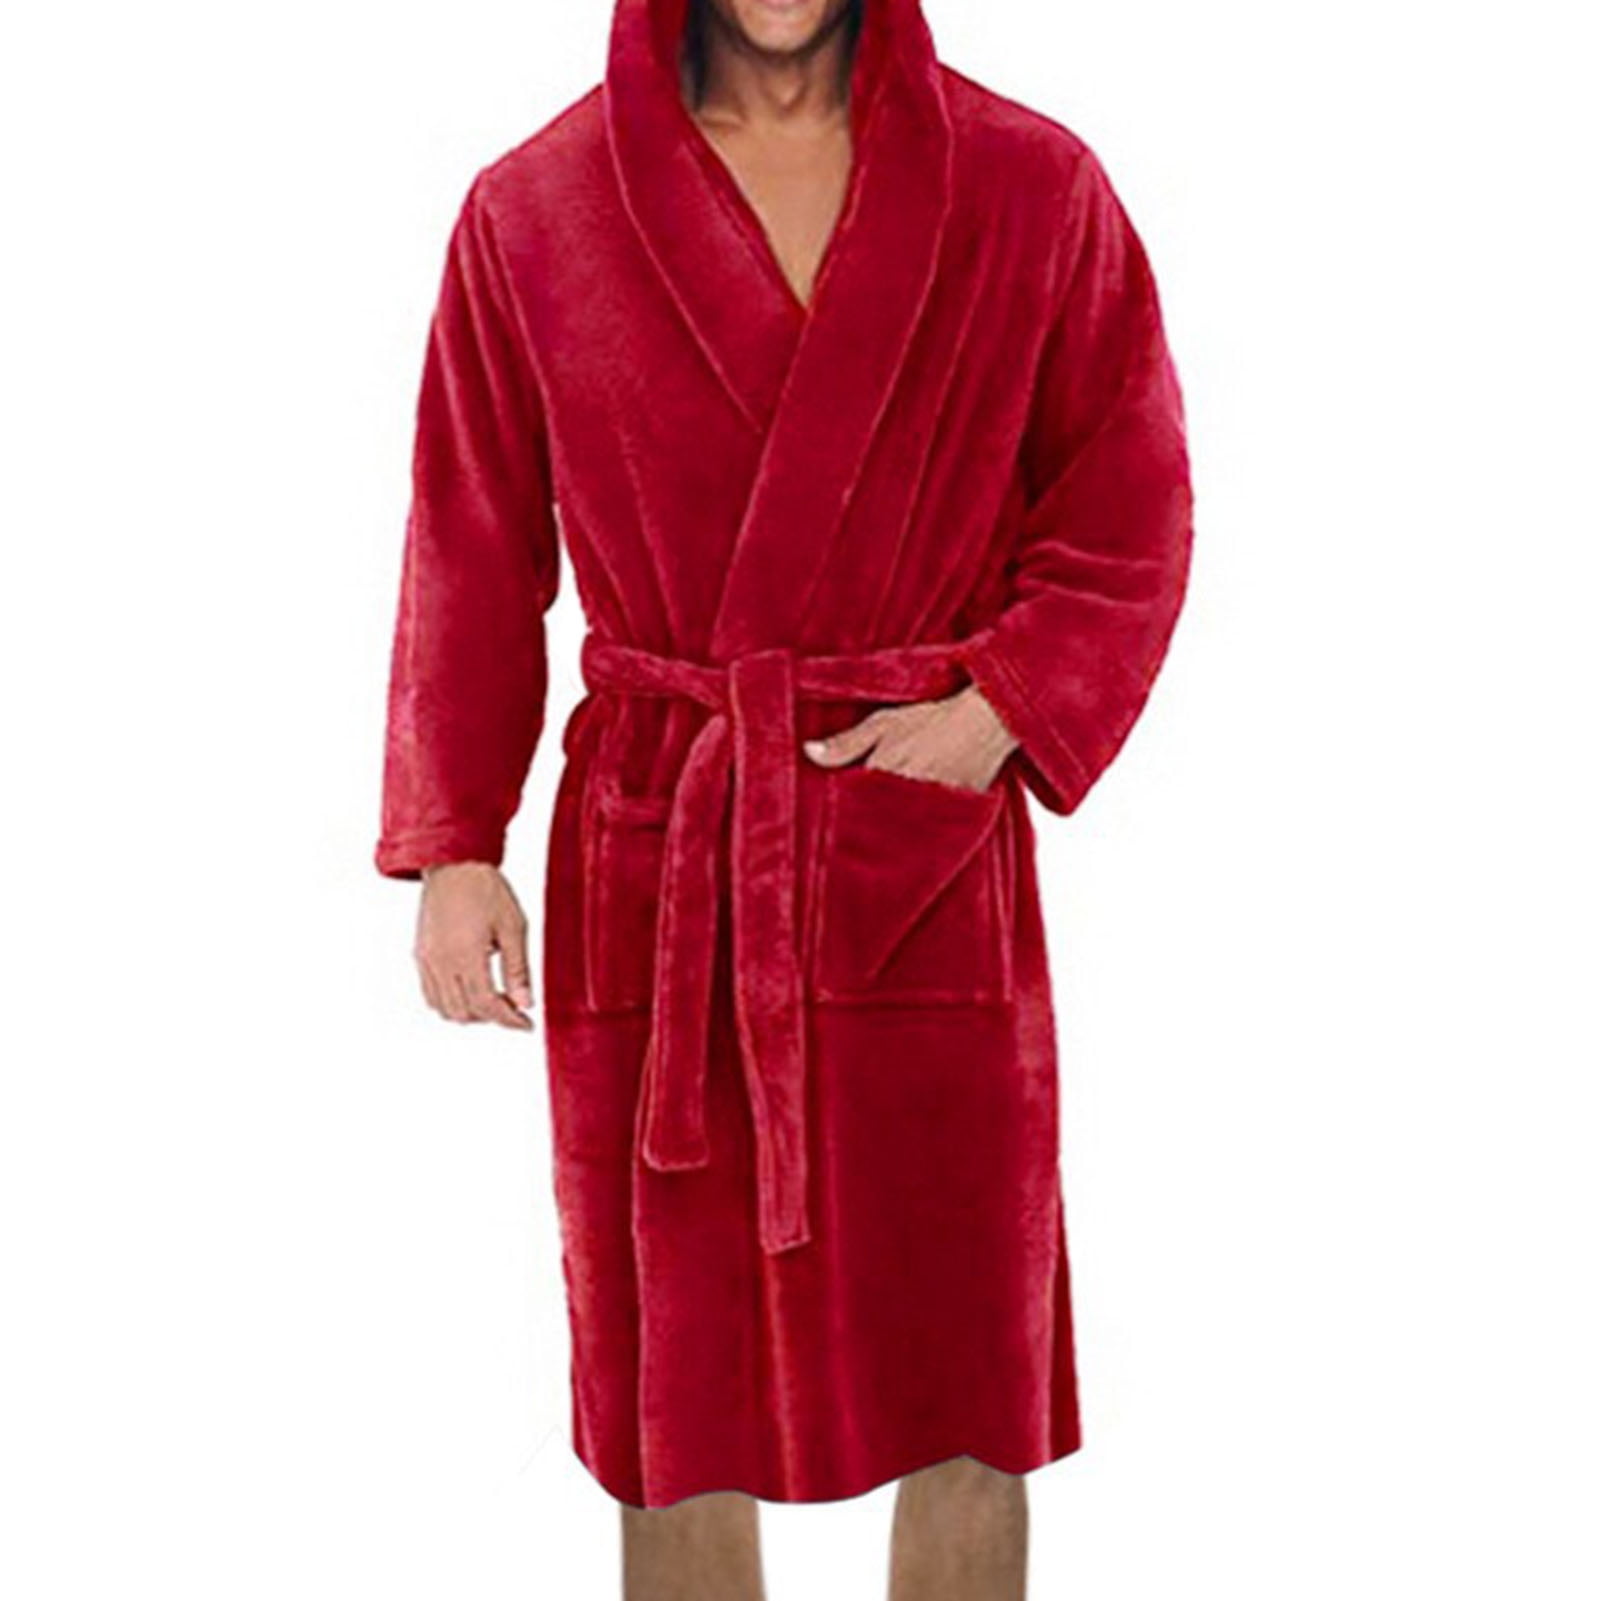 CQR Men's 100% Cotton Flannel Robe Lightweight Soft Plaid Lounge & Night Sleepwear Robes 